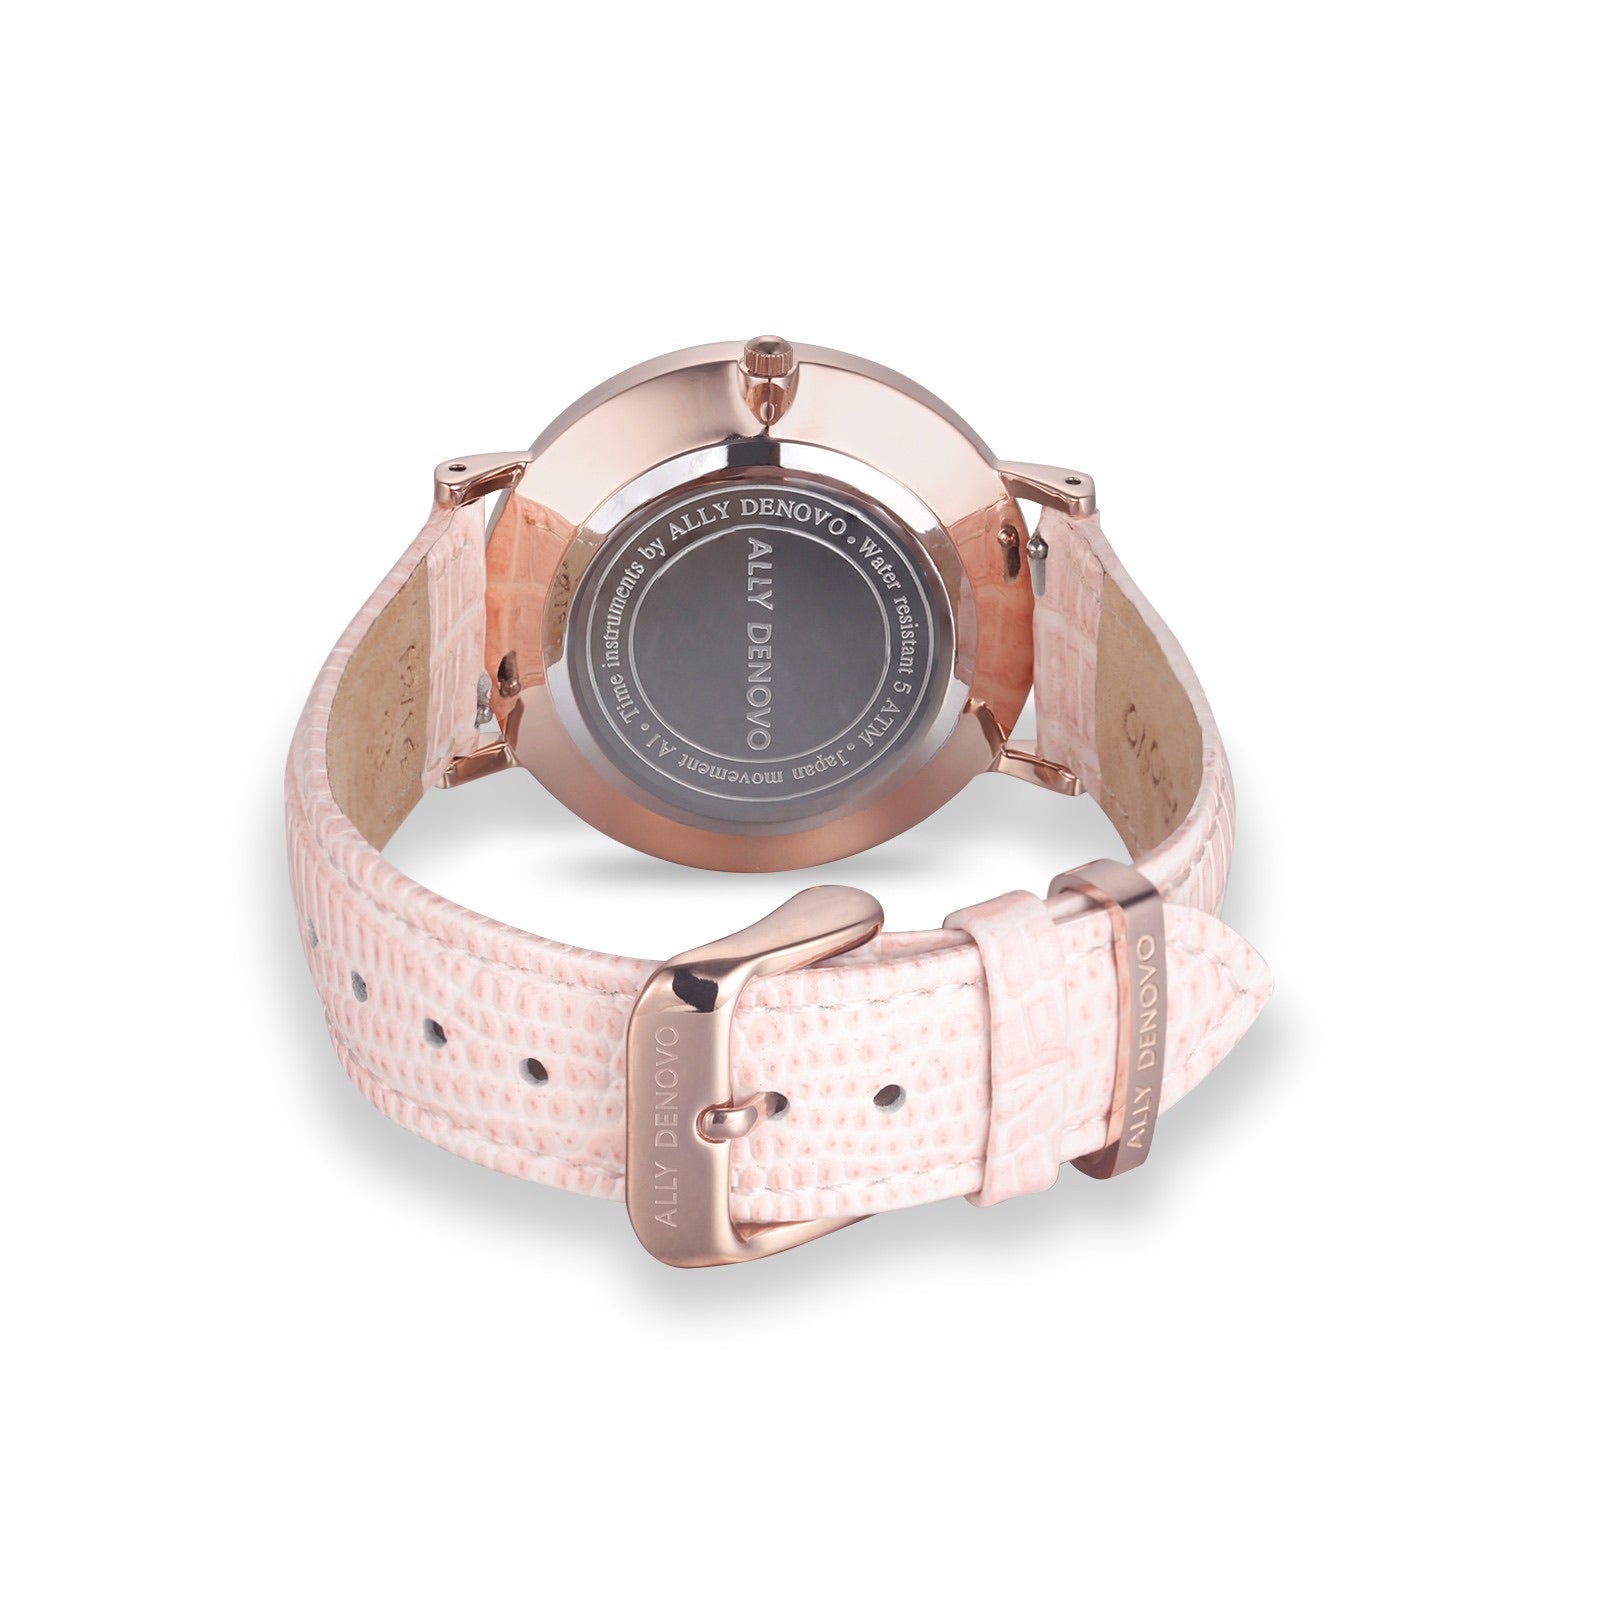 【新上市】Gaia pearl壓蛇紋皮革腕錶-粉紅菱形琉璃玫瑰金框粉紅真皮錶帶